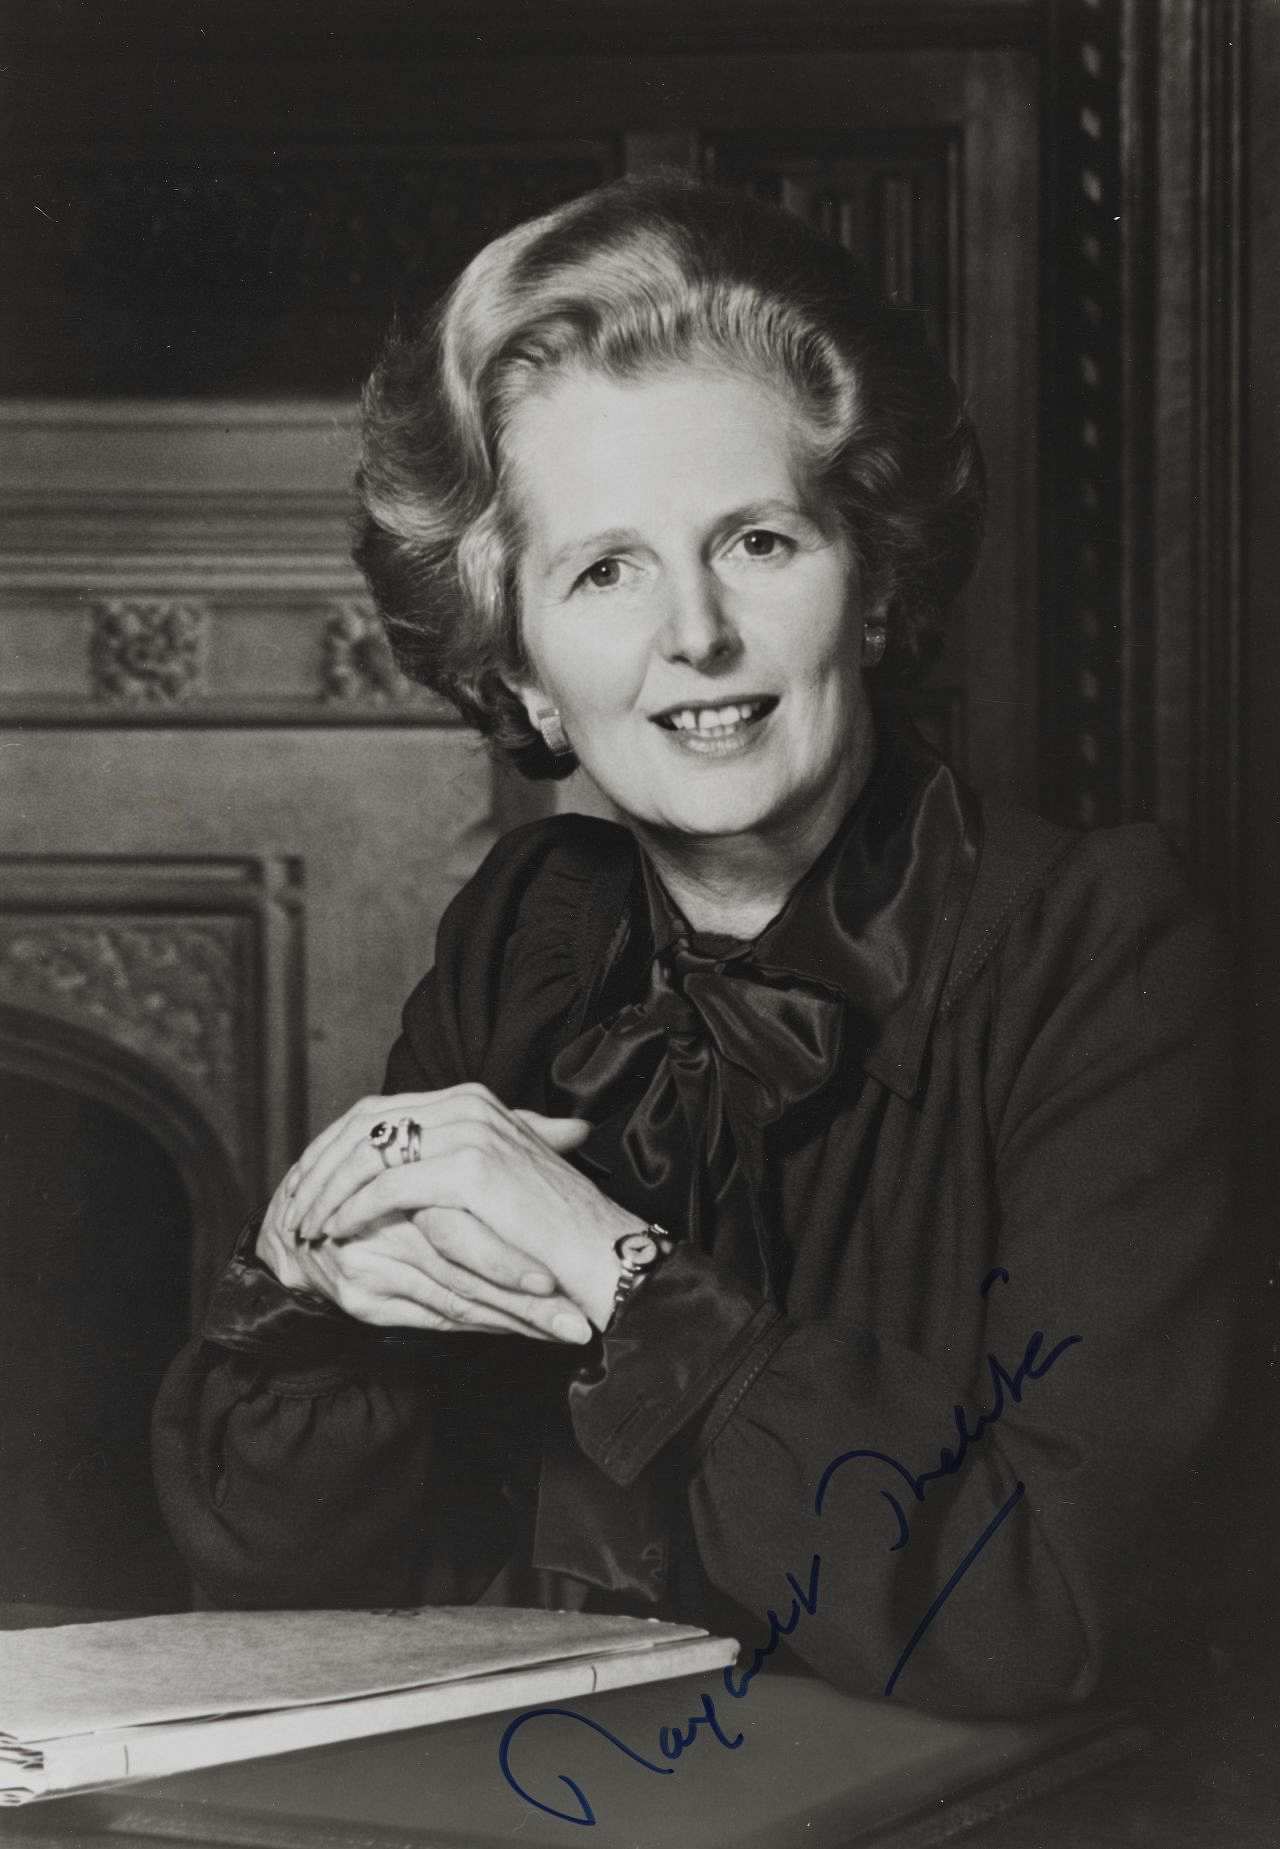 Signiertes Porträtfoto von Margaret Thatcher, Premierministerin des Vereinigten Königreichs von 1979 bis November 1990.